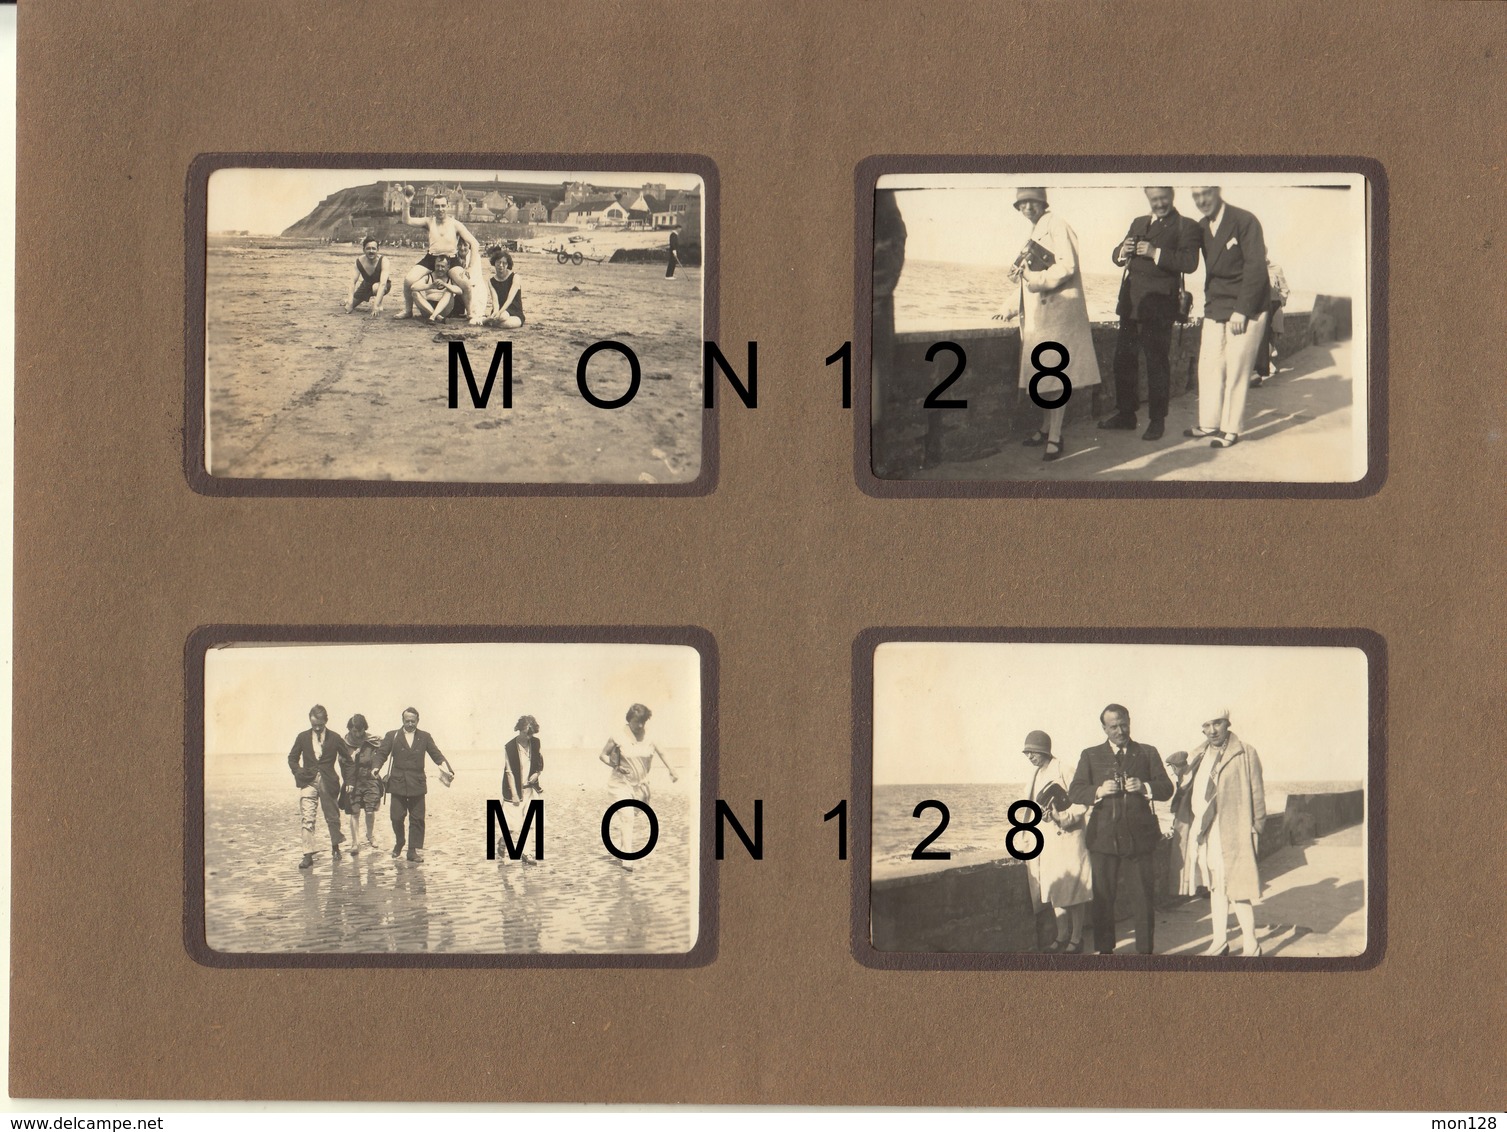 NORMANDIE ARROMANCHES 1930 - 8 PHOTOS DE FAMILLE NON COLLEES - Dim 8,5x5,5 Cms - BON ETAT - Lieux